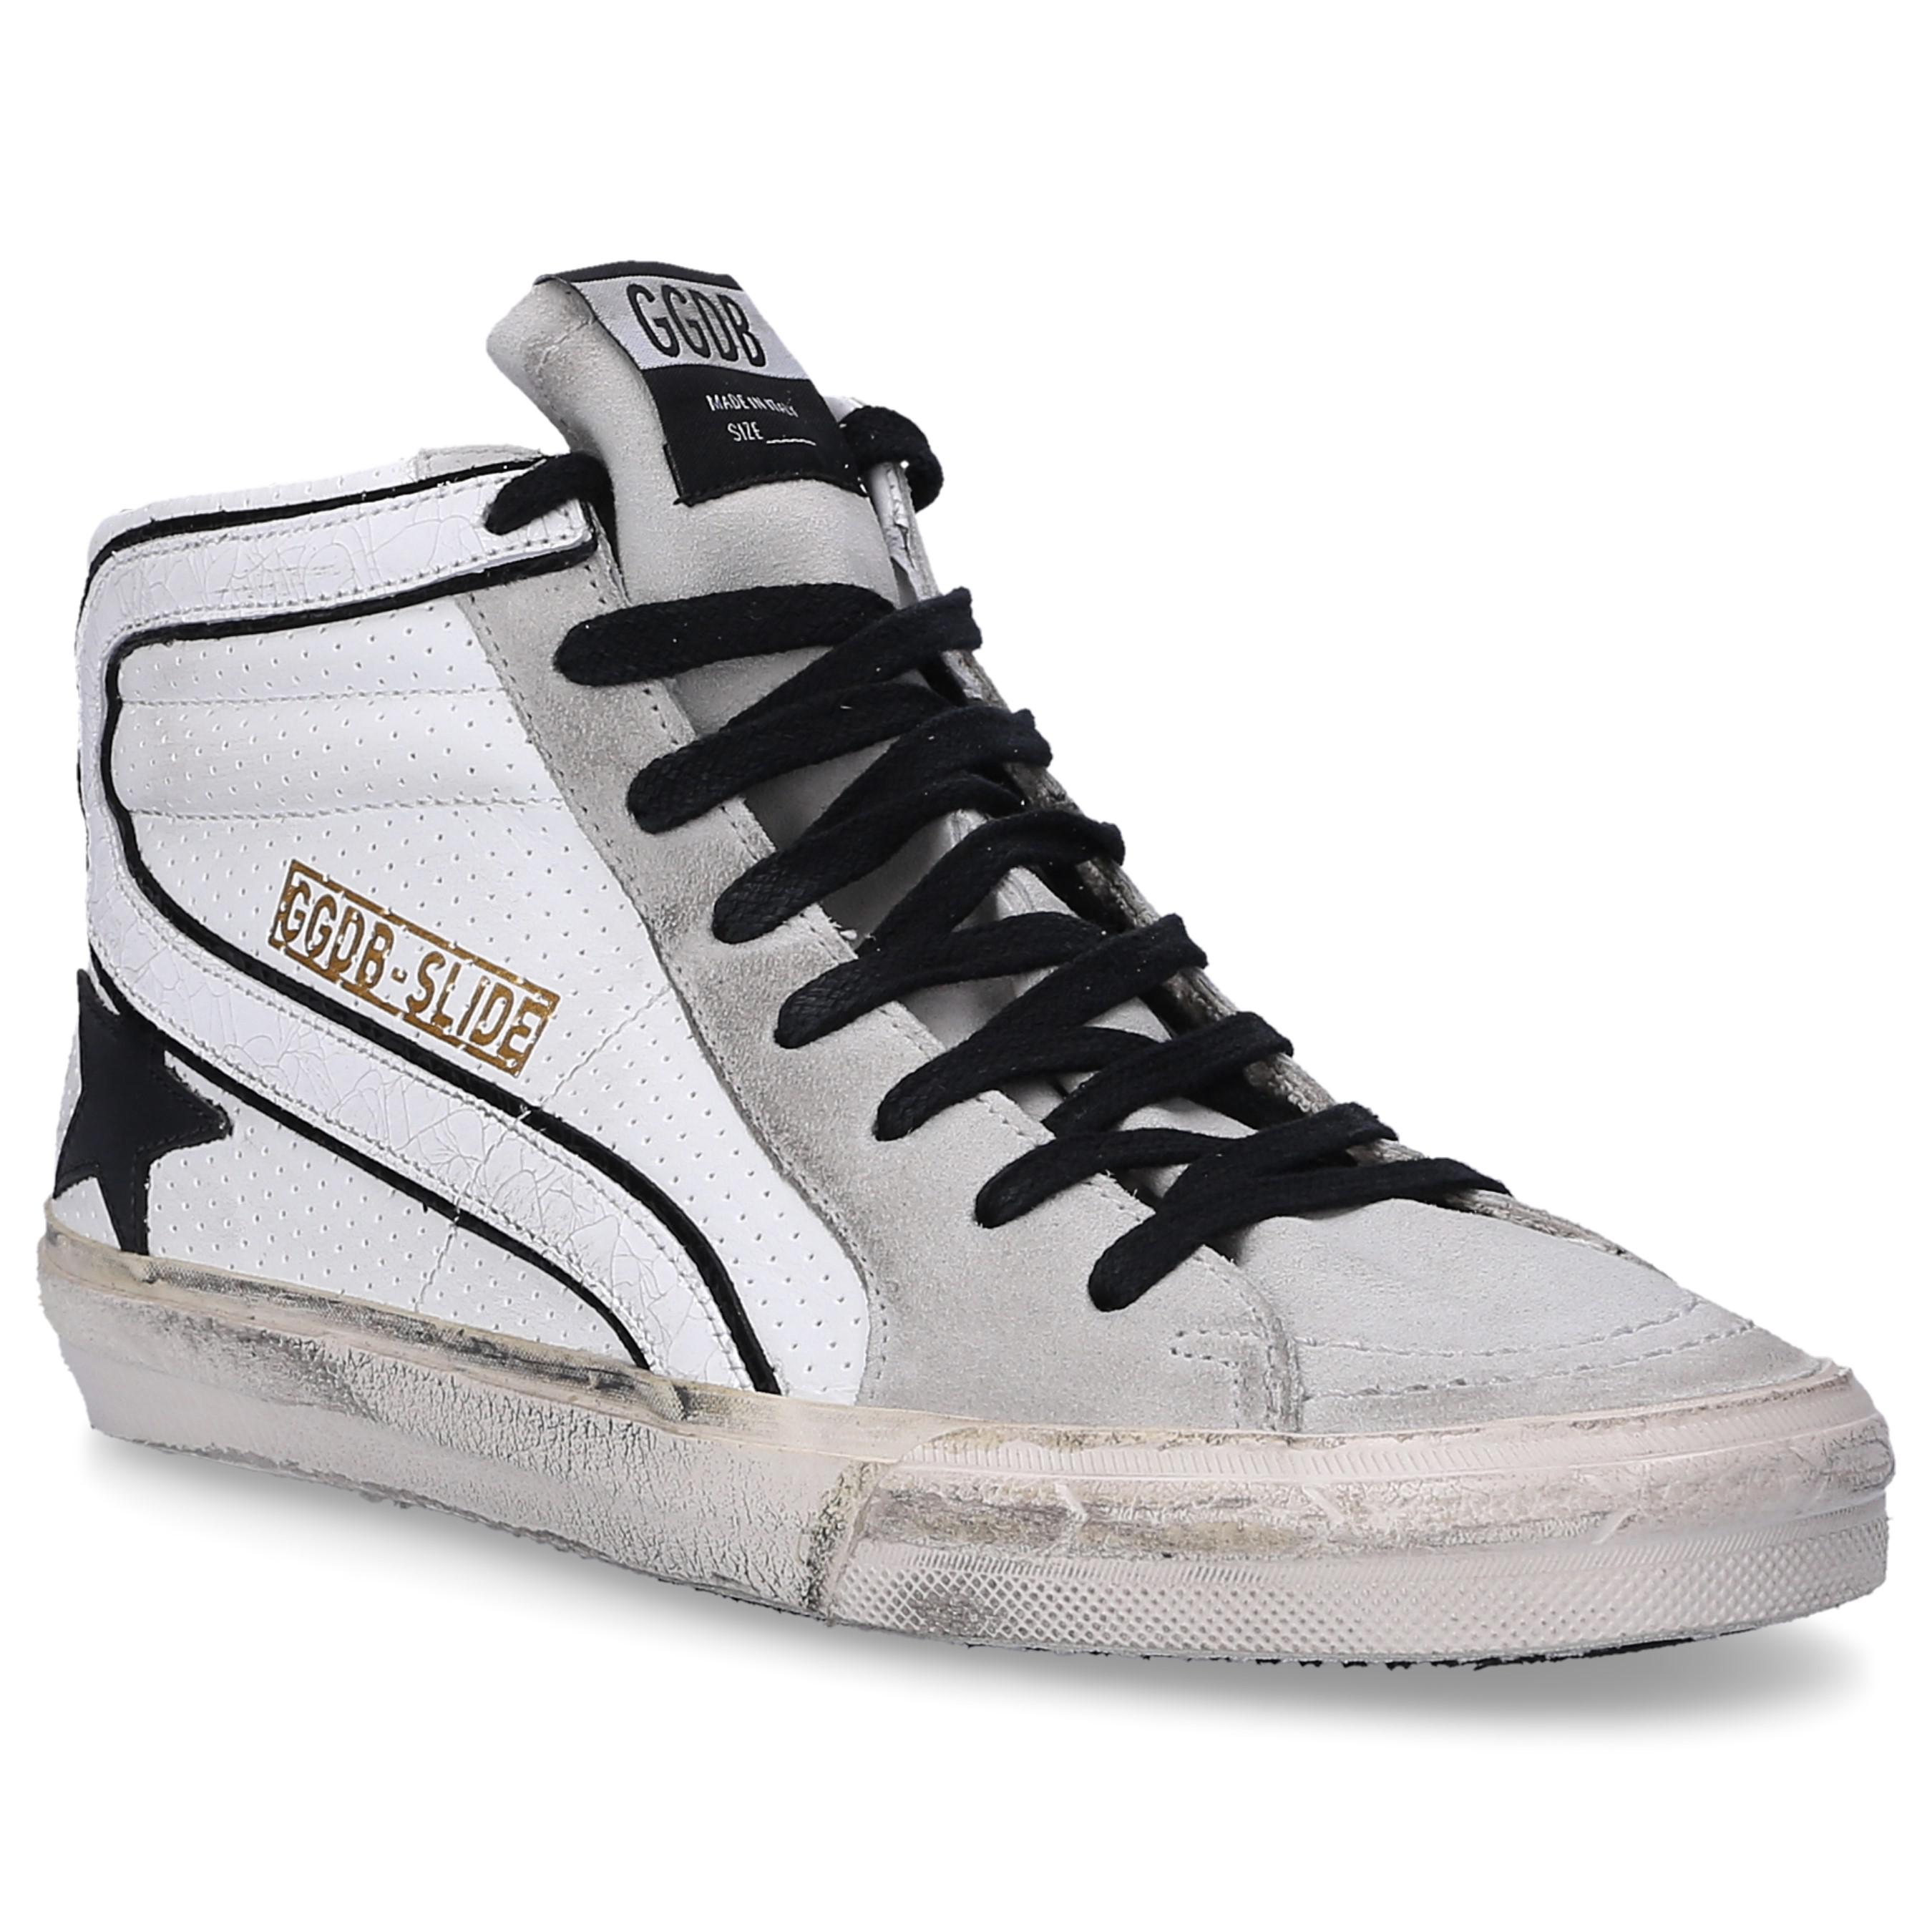 Lyst - Golden Goose Deluxe Brand High-top Sneakers 595 Slide Calfskin ...